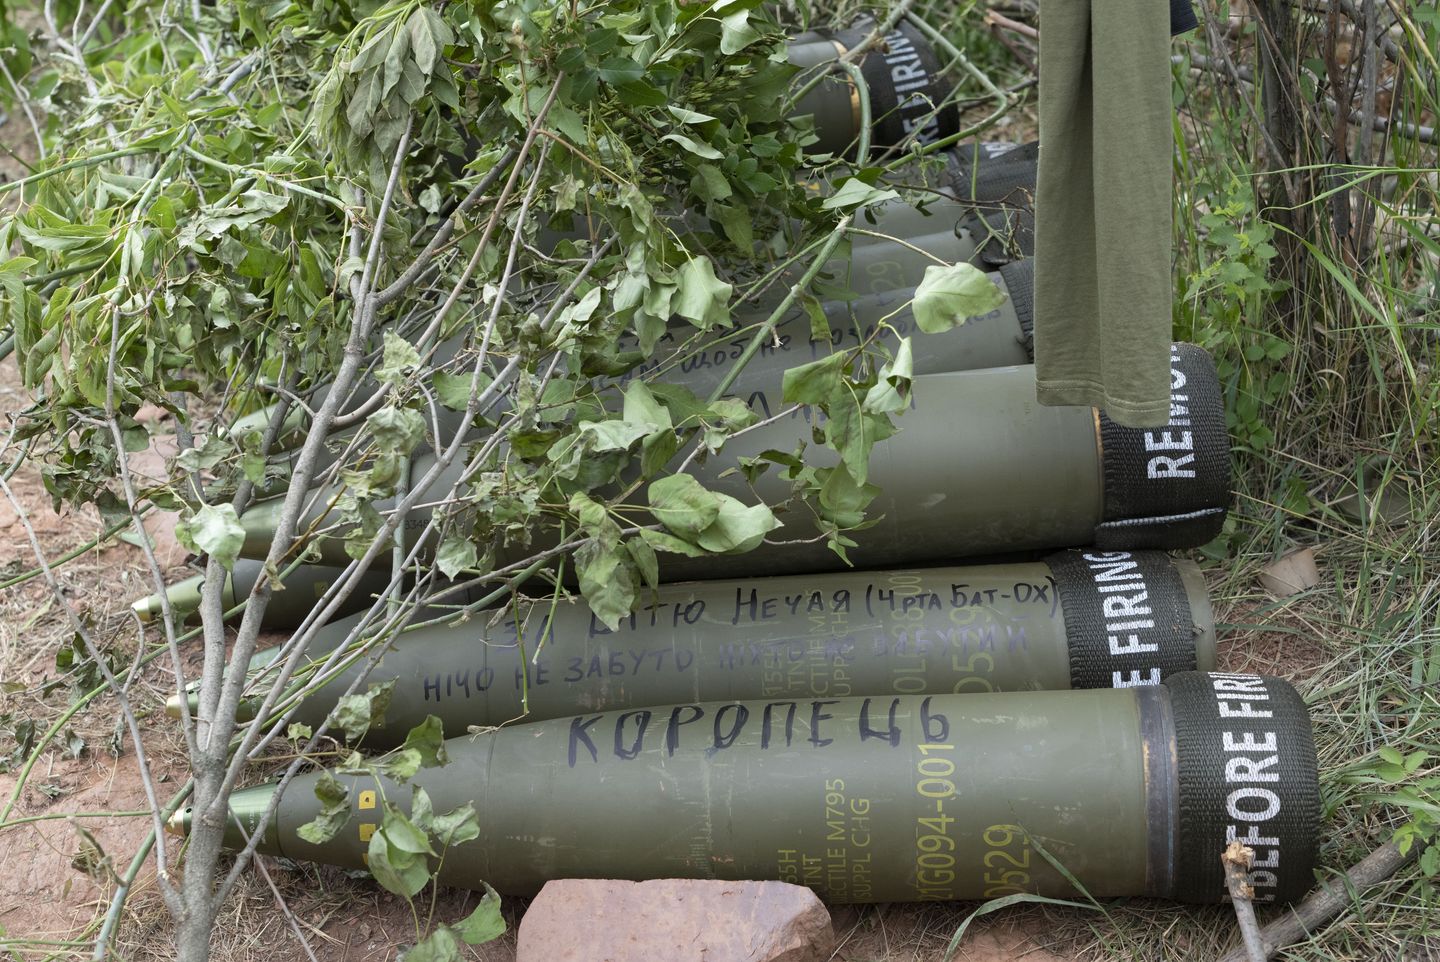 US aid to Ukraine puts pressure on Pentagon's arms stockpile